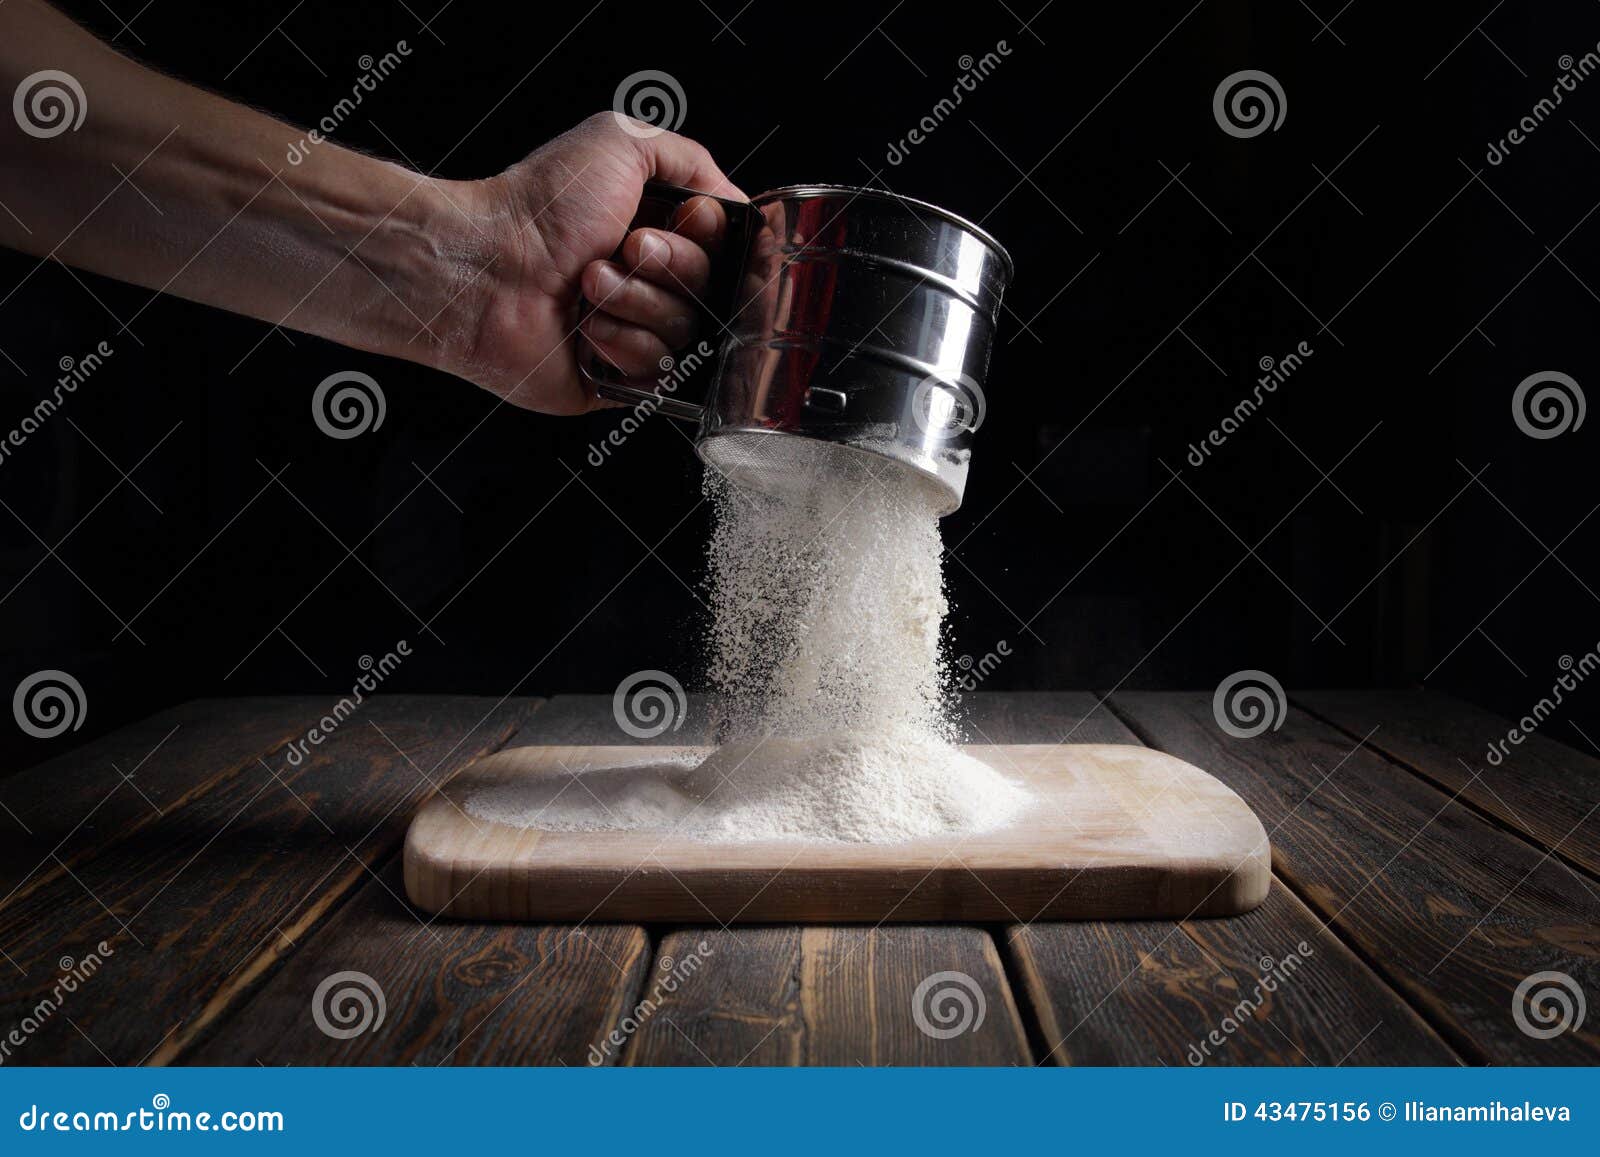 hand sifts the flour through a sieve.